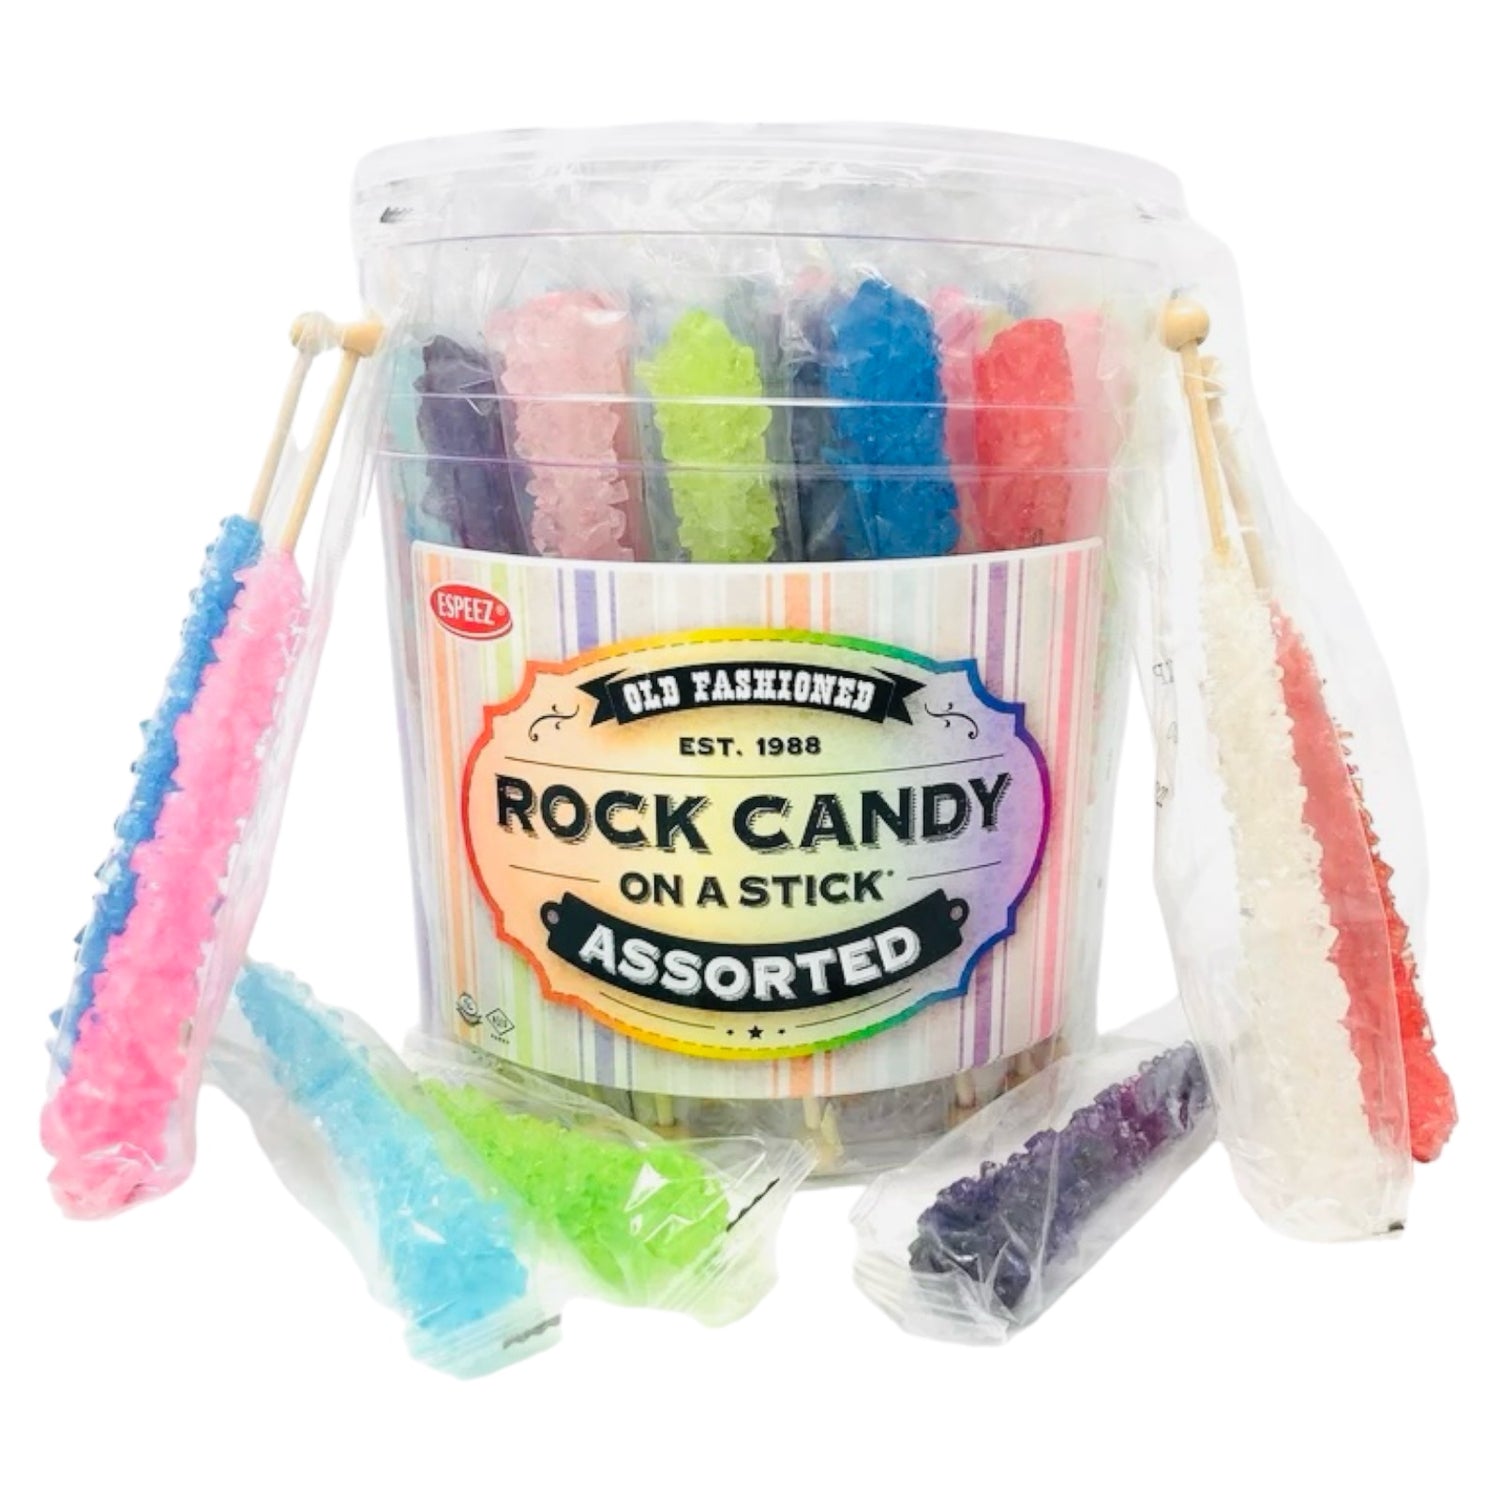 Espeez Assorted Rock Candy on a Stick 22g